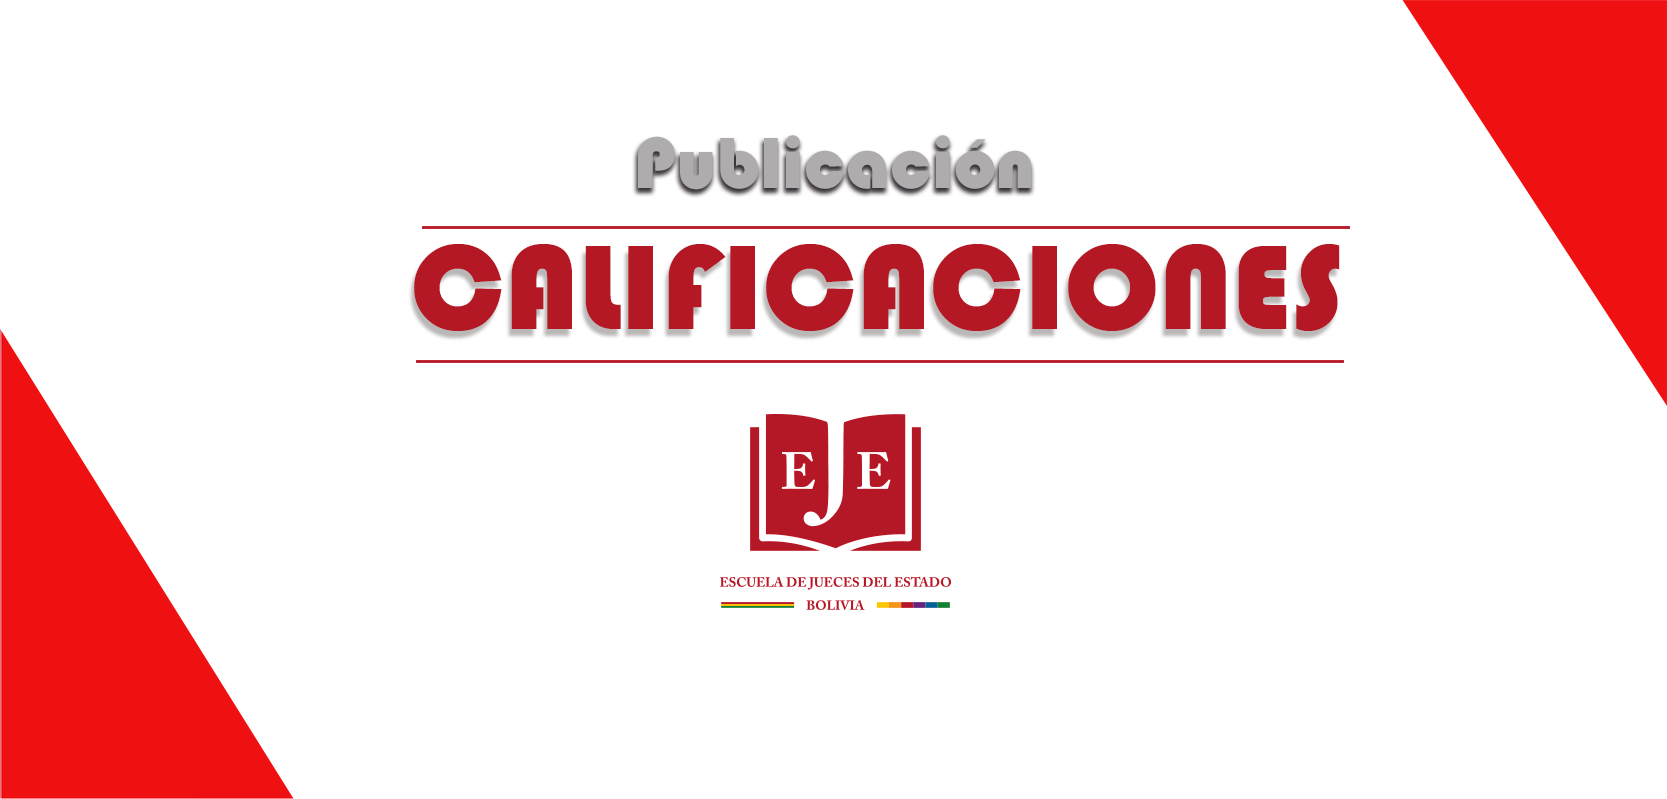 CALIFICACIONES - LEGITIMACION DE GANANCIAS ILICITAS